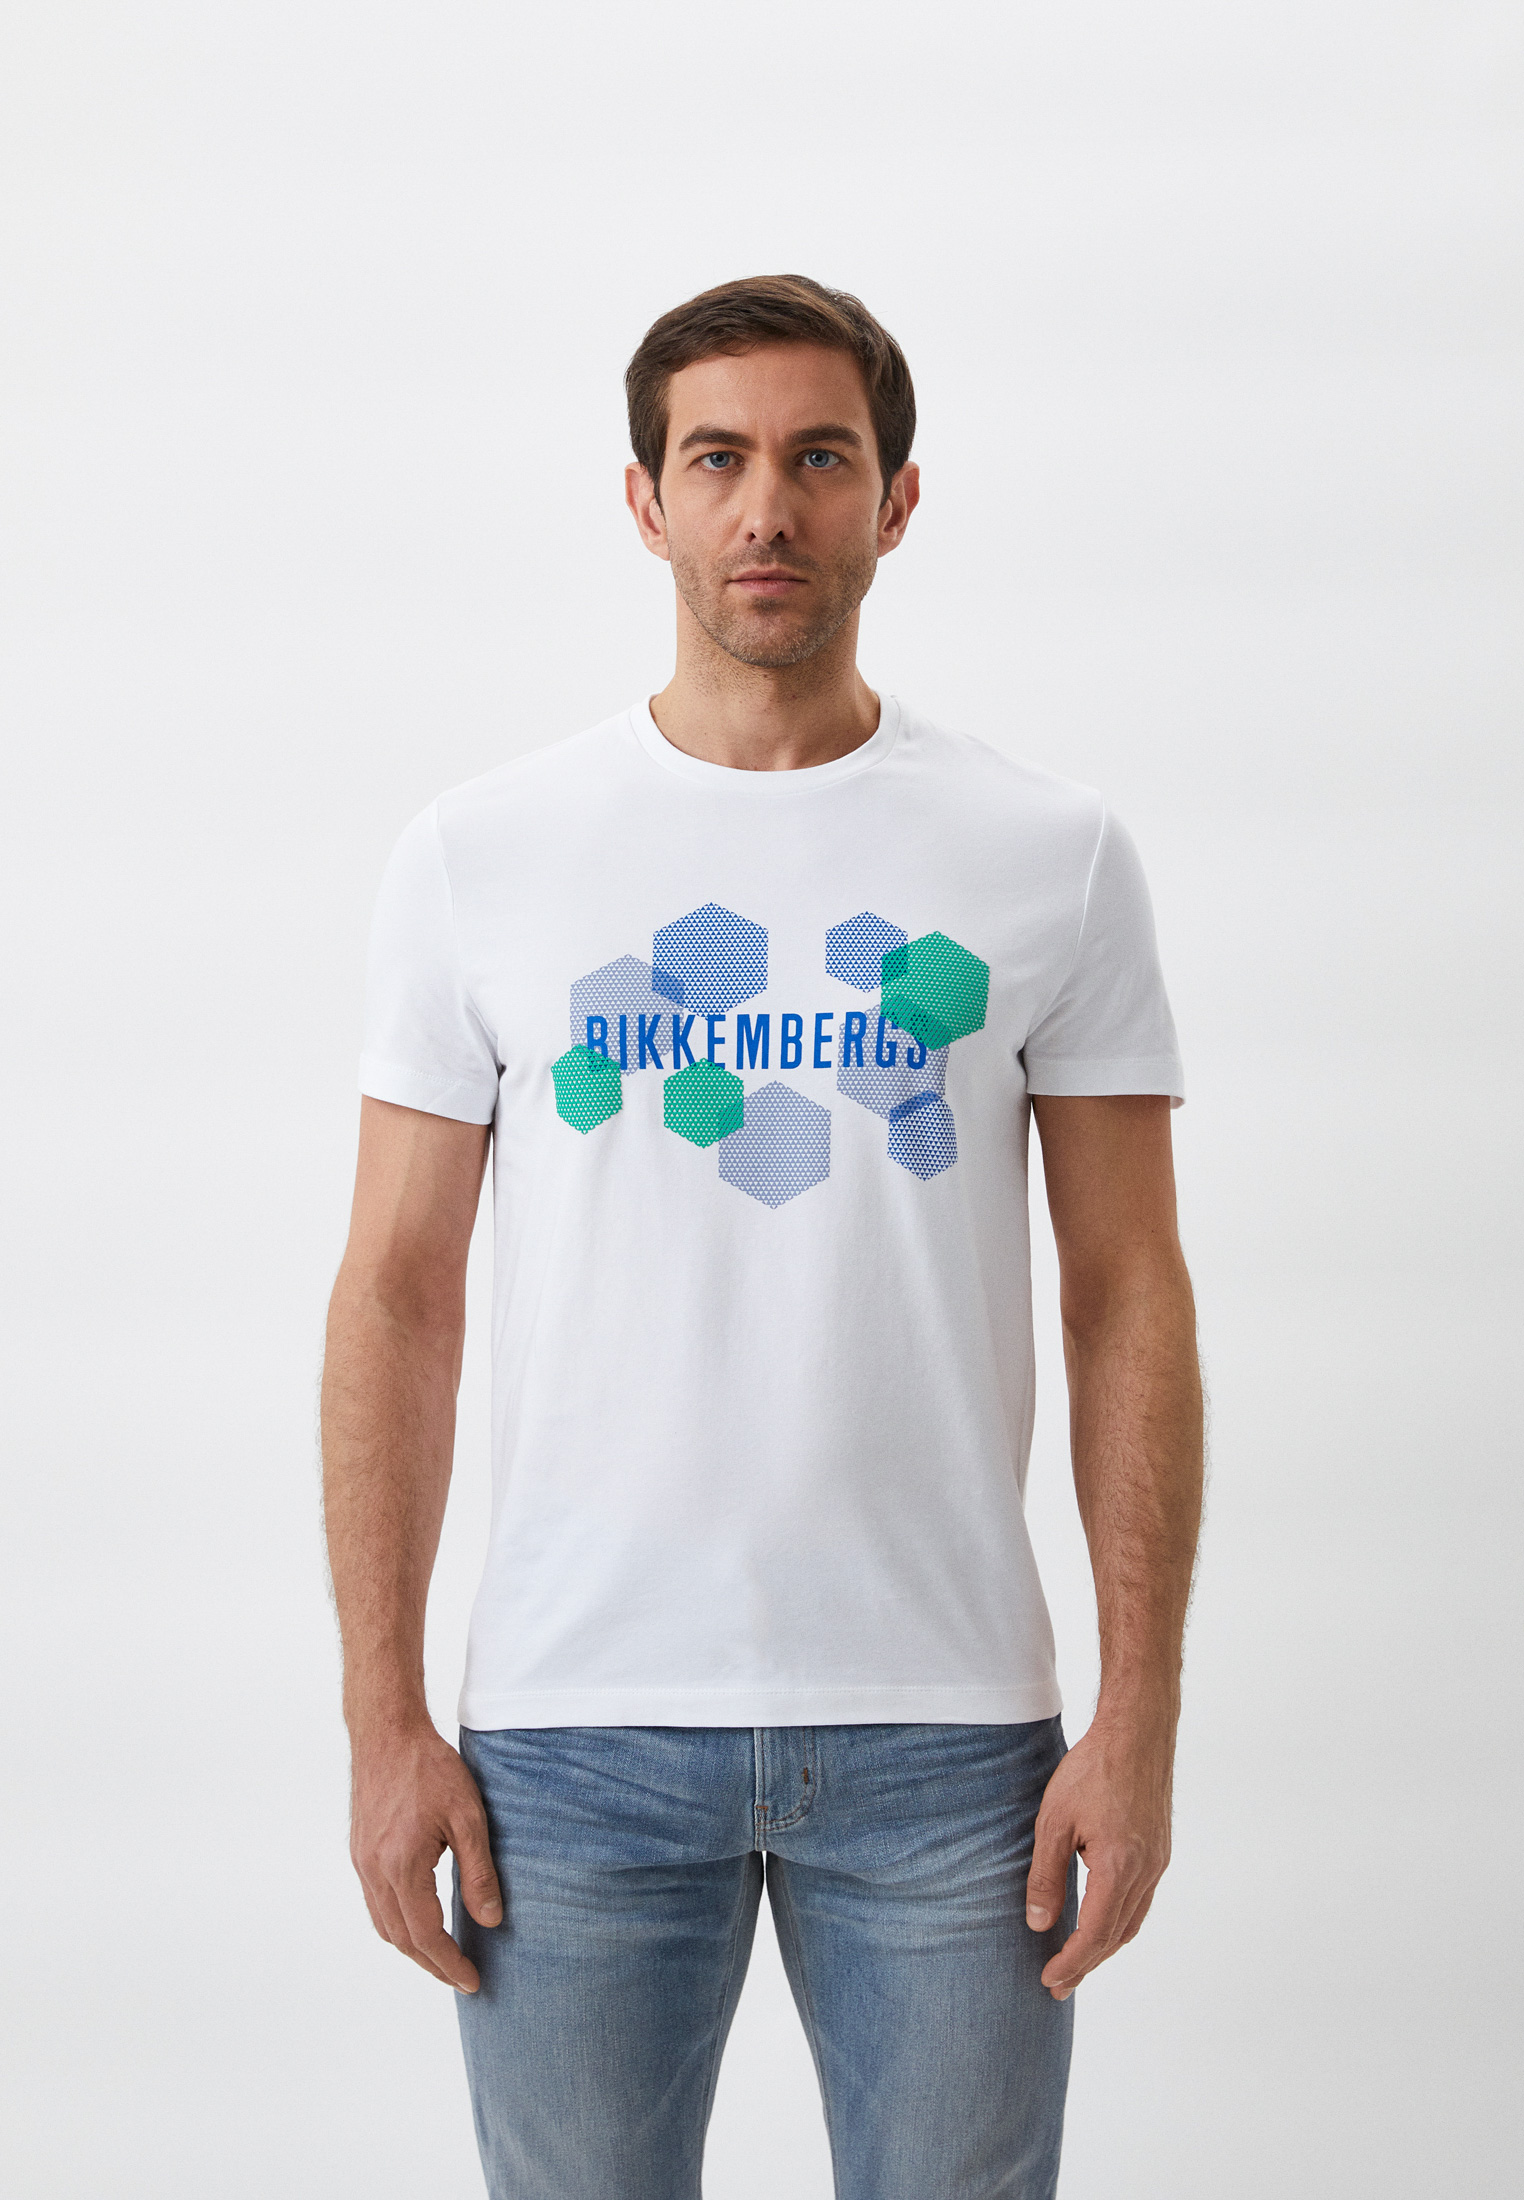 Мужская футболка Bikkembergs (Биккембергс) C 4 101 1M E 2359: изображение 1